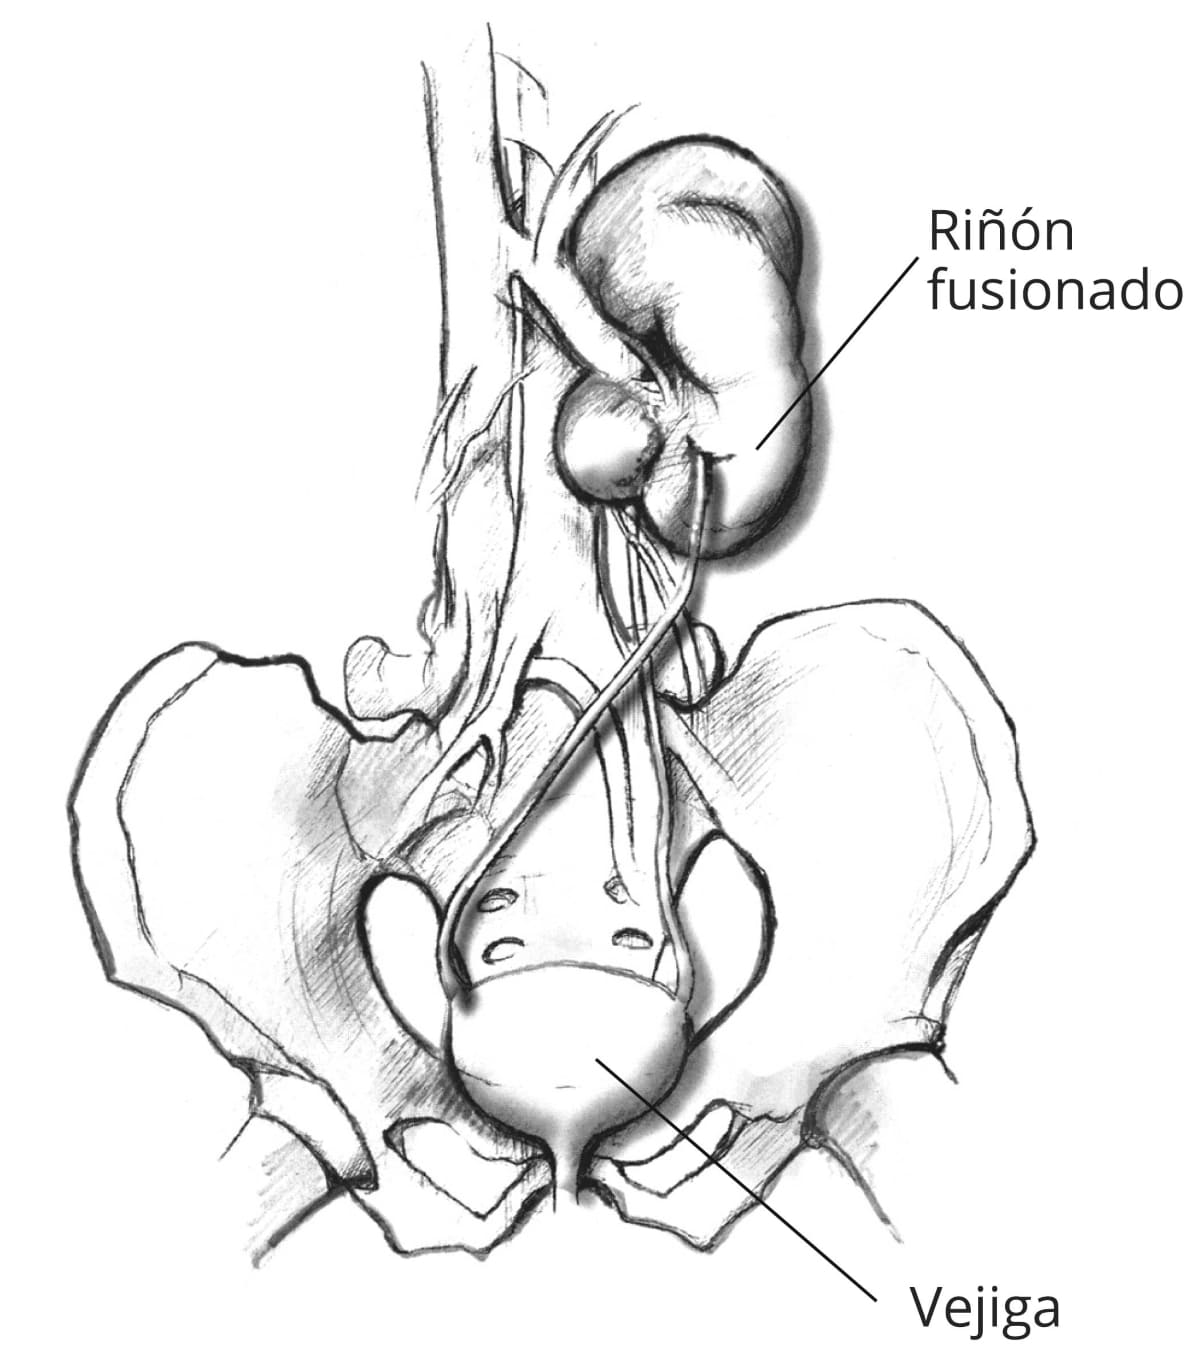 Un riñón ectópico fusionado, mostrando la pelvis, la vejiga, los uréteres y los riñones unidos. El riñón que normalmente estaría a la izquierda cruzó al otro lado del cuerpo y se fusionó con el riñón de la derecha.